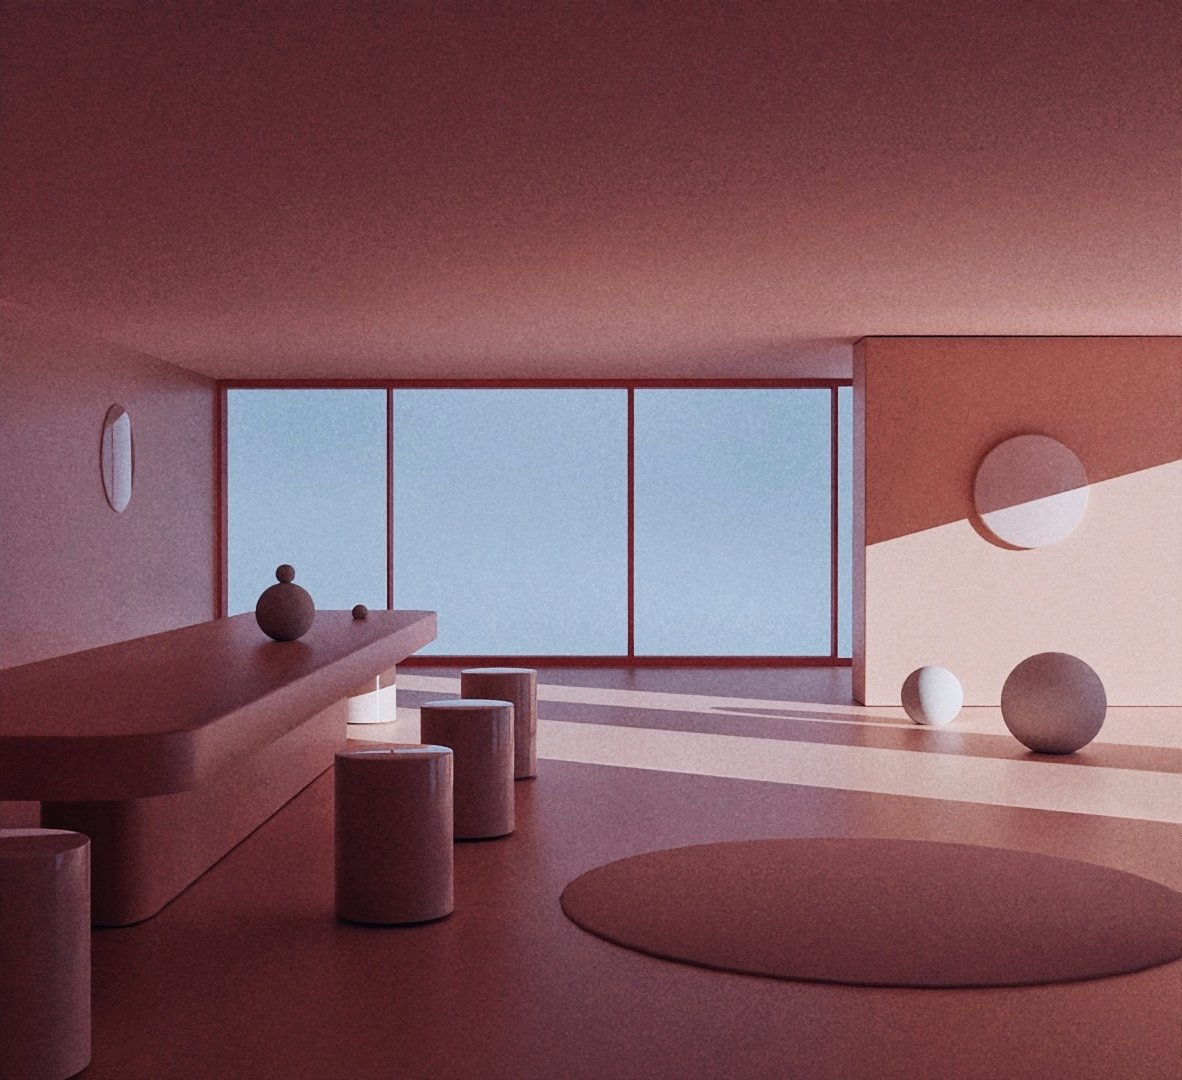 dining room
#vaporwave #surreal #liminalspace #spatialdesign